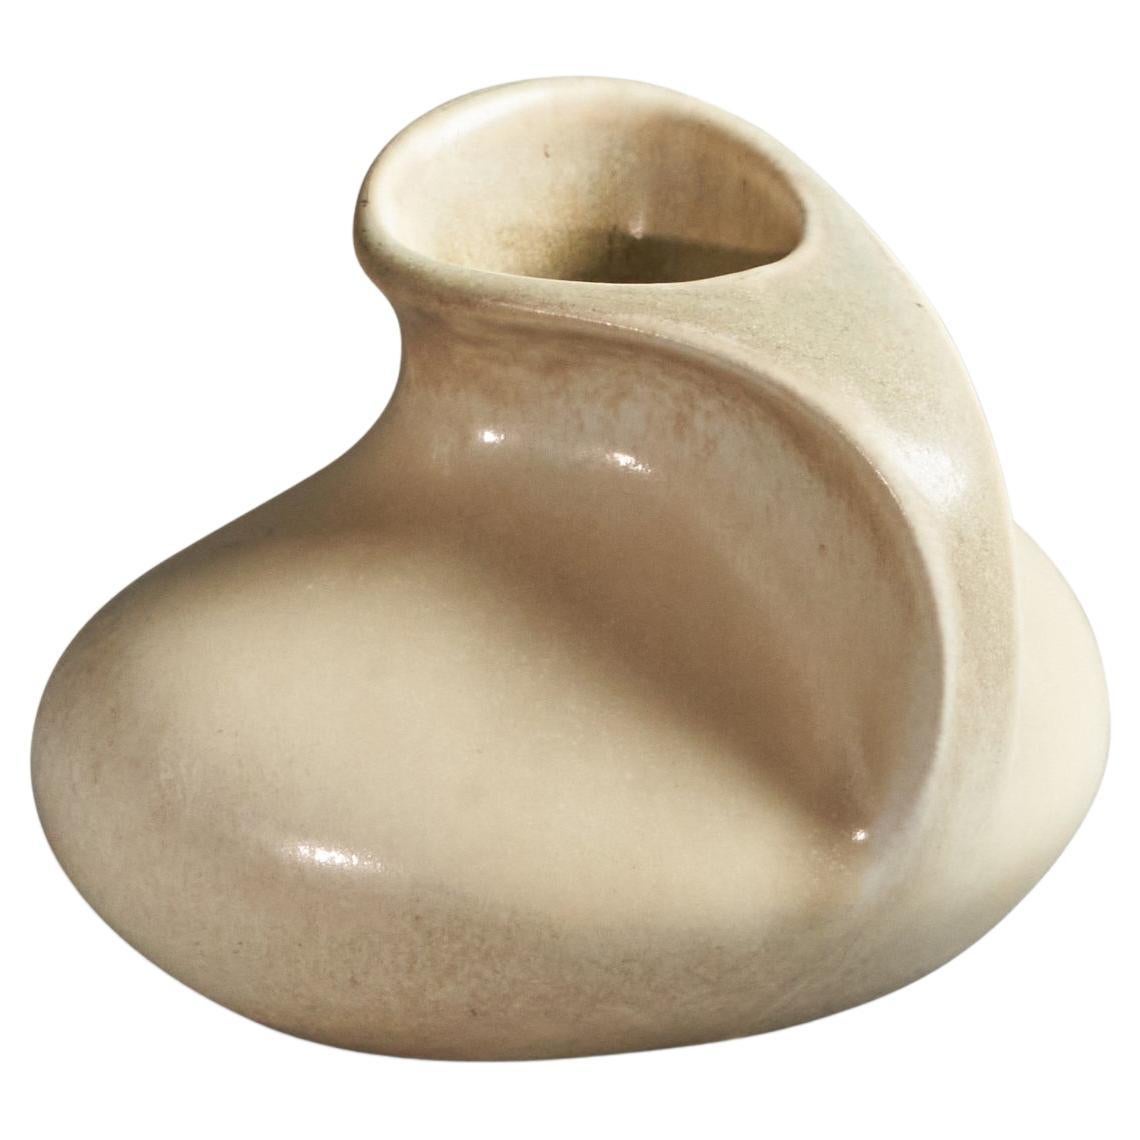 Lillemor Mannerheim, Small Vase, Porcelain, Sweden, 1950s For Sale